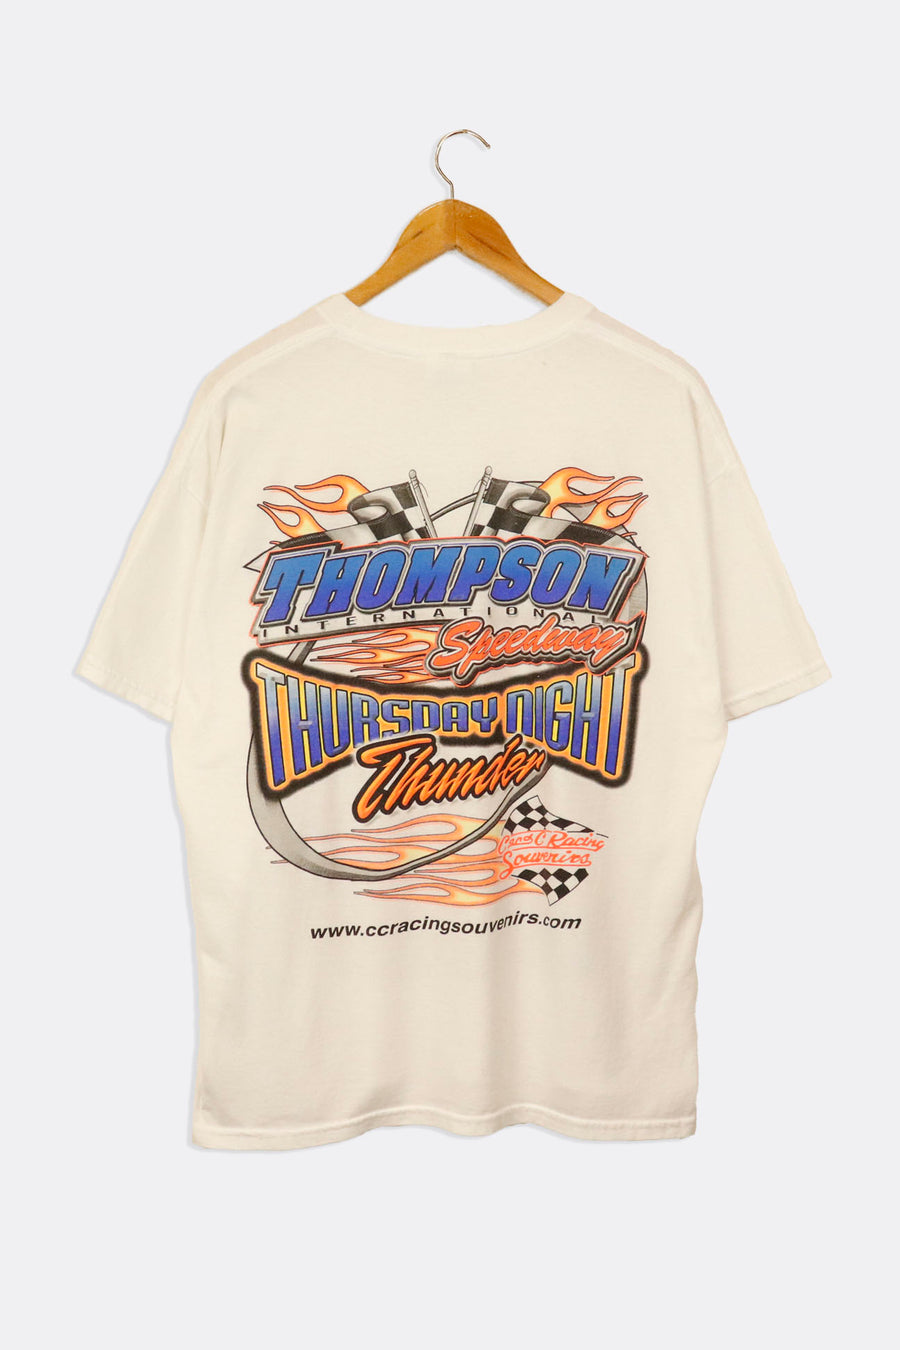 Vintage CC Racing Souvenirs Website T Shirt Sz L